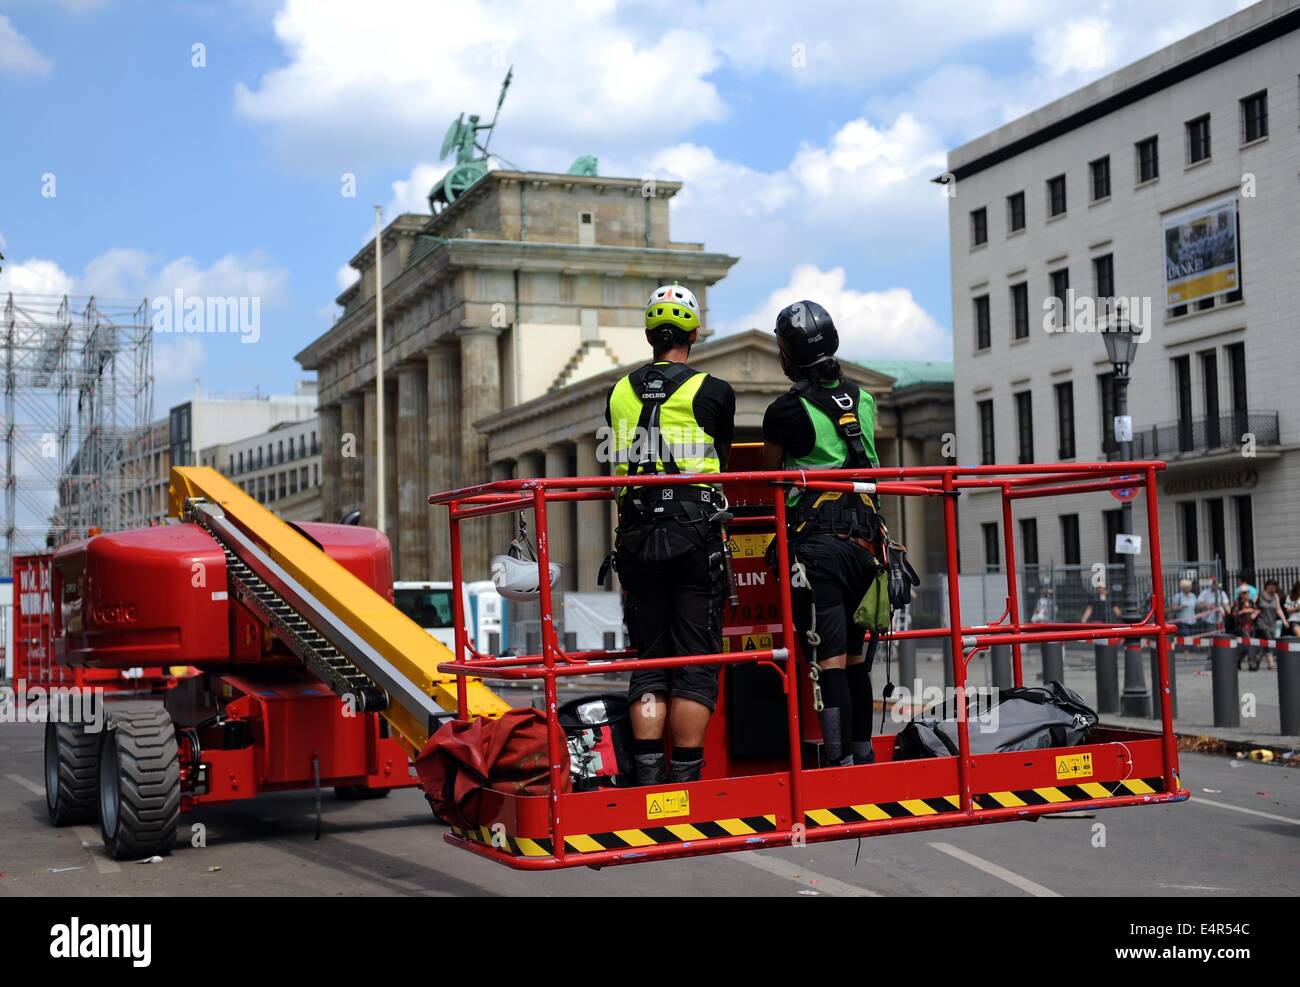 Arbeiter zerlegen die Bühne auf der "Straße des 17. Juni. Juni "vor dem Brandenburger Tor in Berlin, Deutschland, 16. Juli 2014. Für die Dauer der 2014 World Cup, die so genannte "Fan-Meile" war der zentrale Standort für die öffentlichen Fan-feste, die während der 2014 abgehalten wurden Spiele World Cup. Foto: Britta Pedersen/dpa Stockfoto